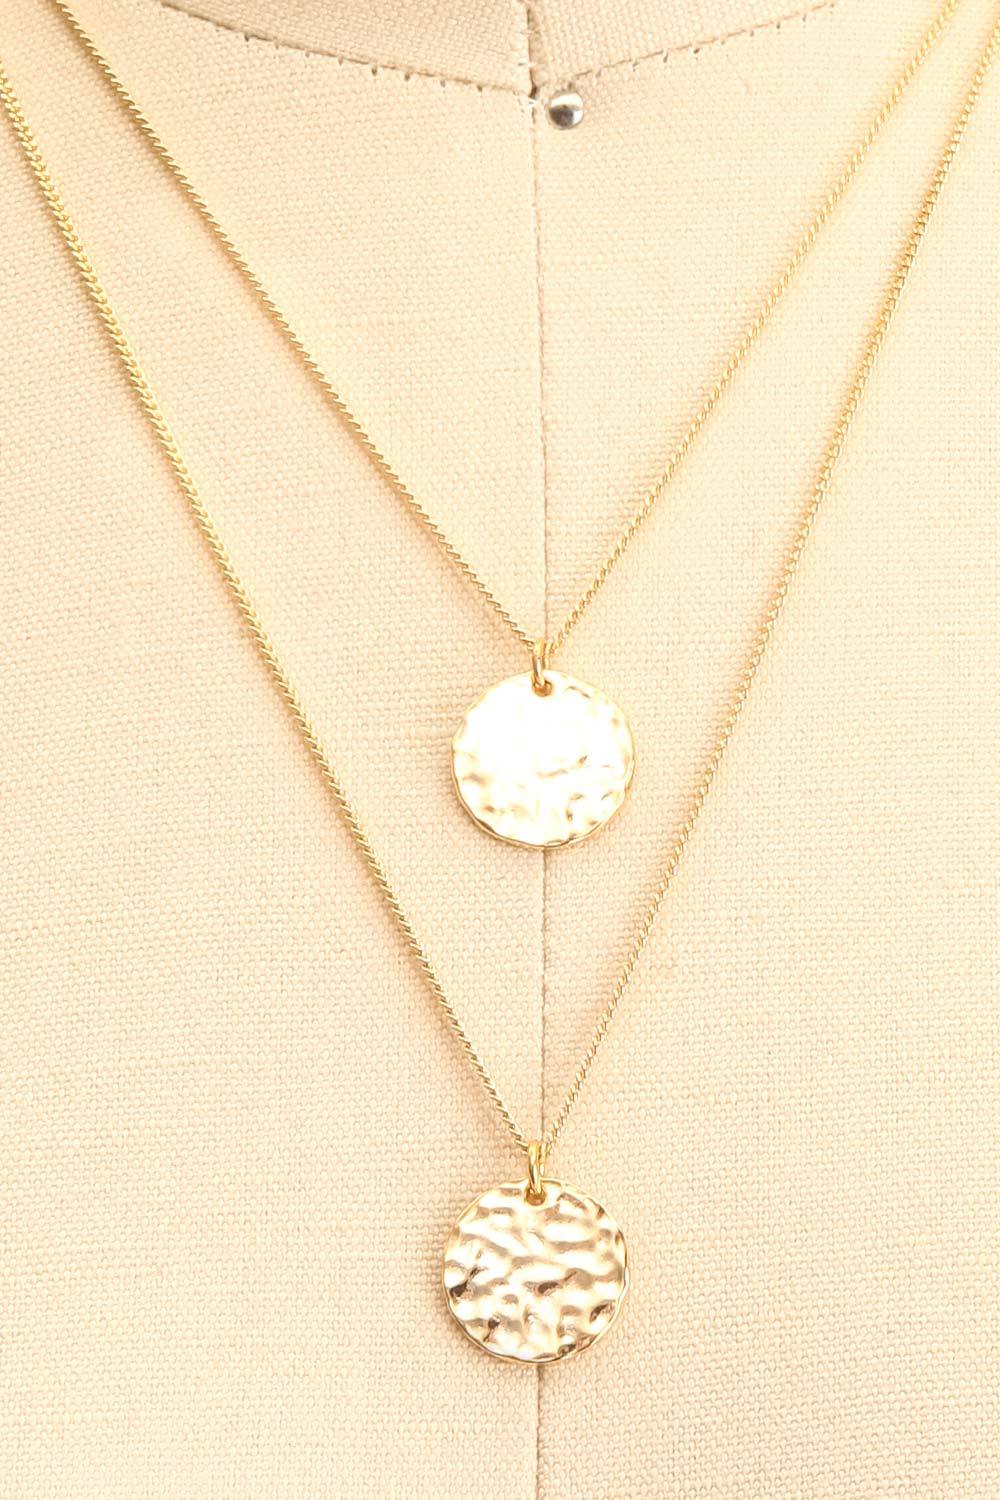 Aasha Agot Gold Necklace | Collier doré | La Petite Garçonne close-up